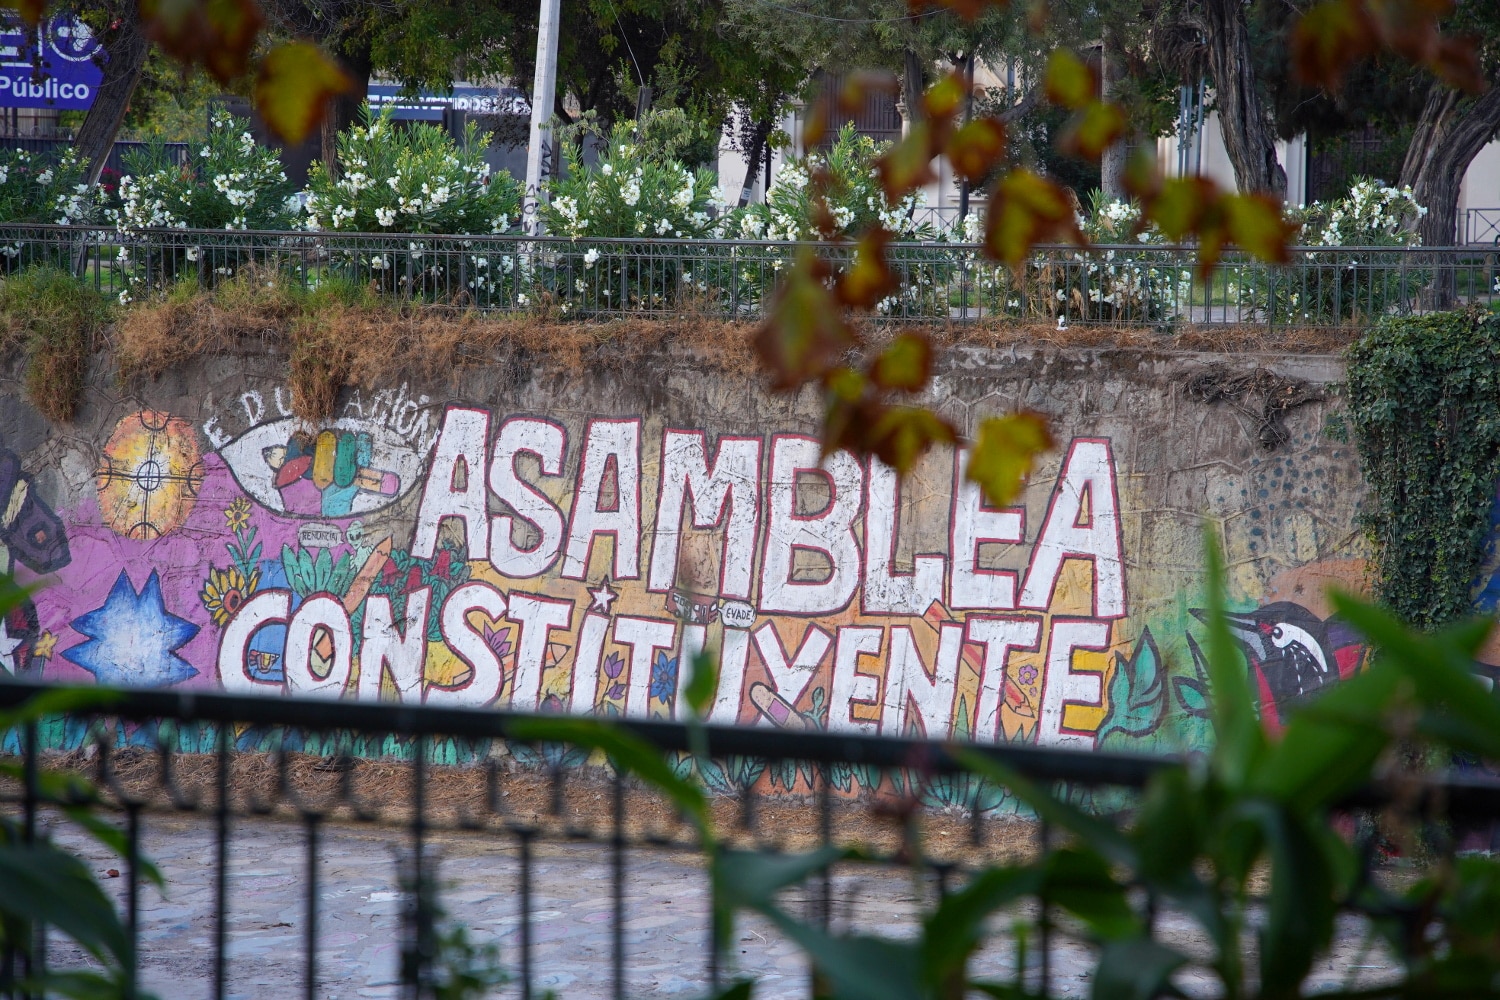 Un graffiti sur un mur le long du río Mapocho à Saantiago de Chili : "Asamblea constituyente" (Assemblée constituante)